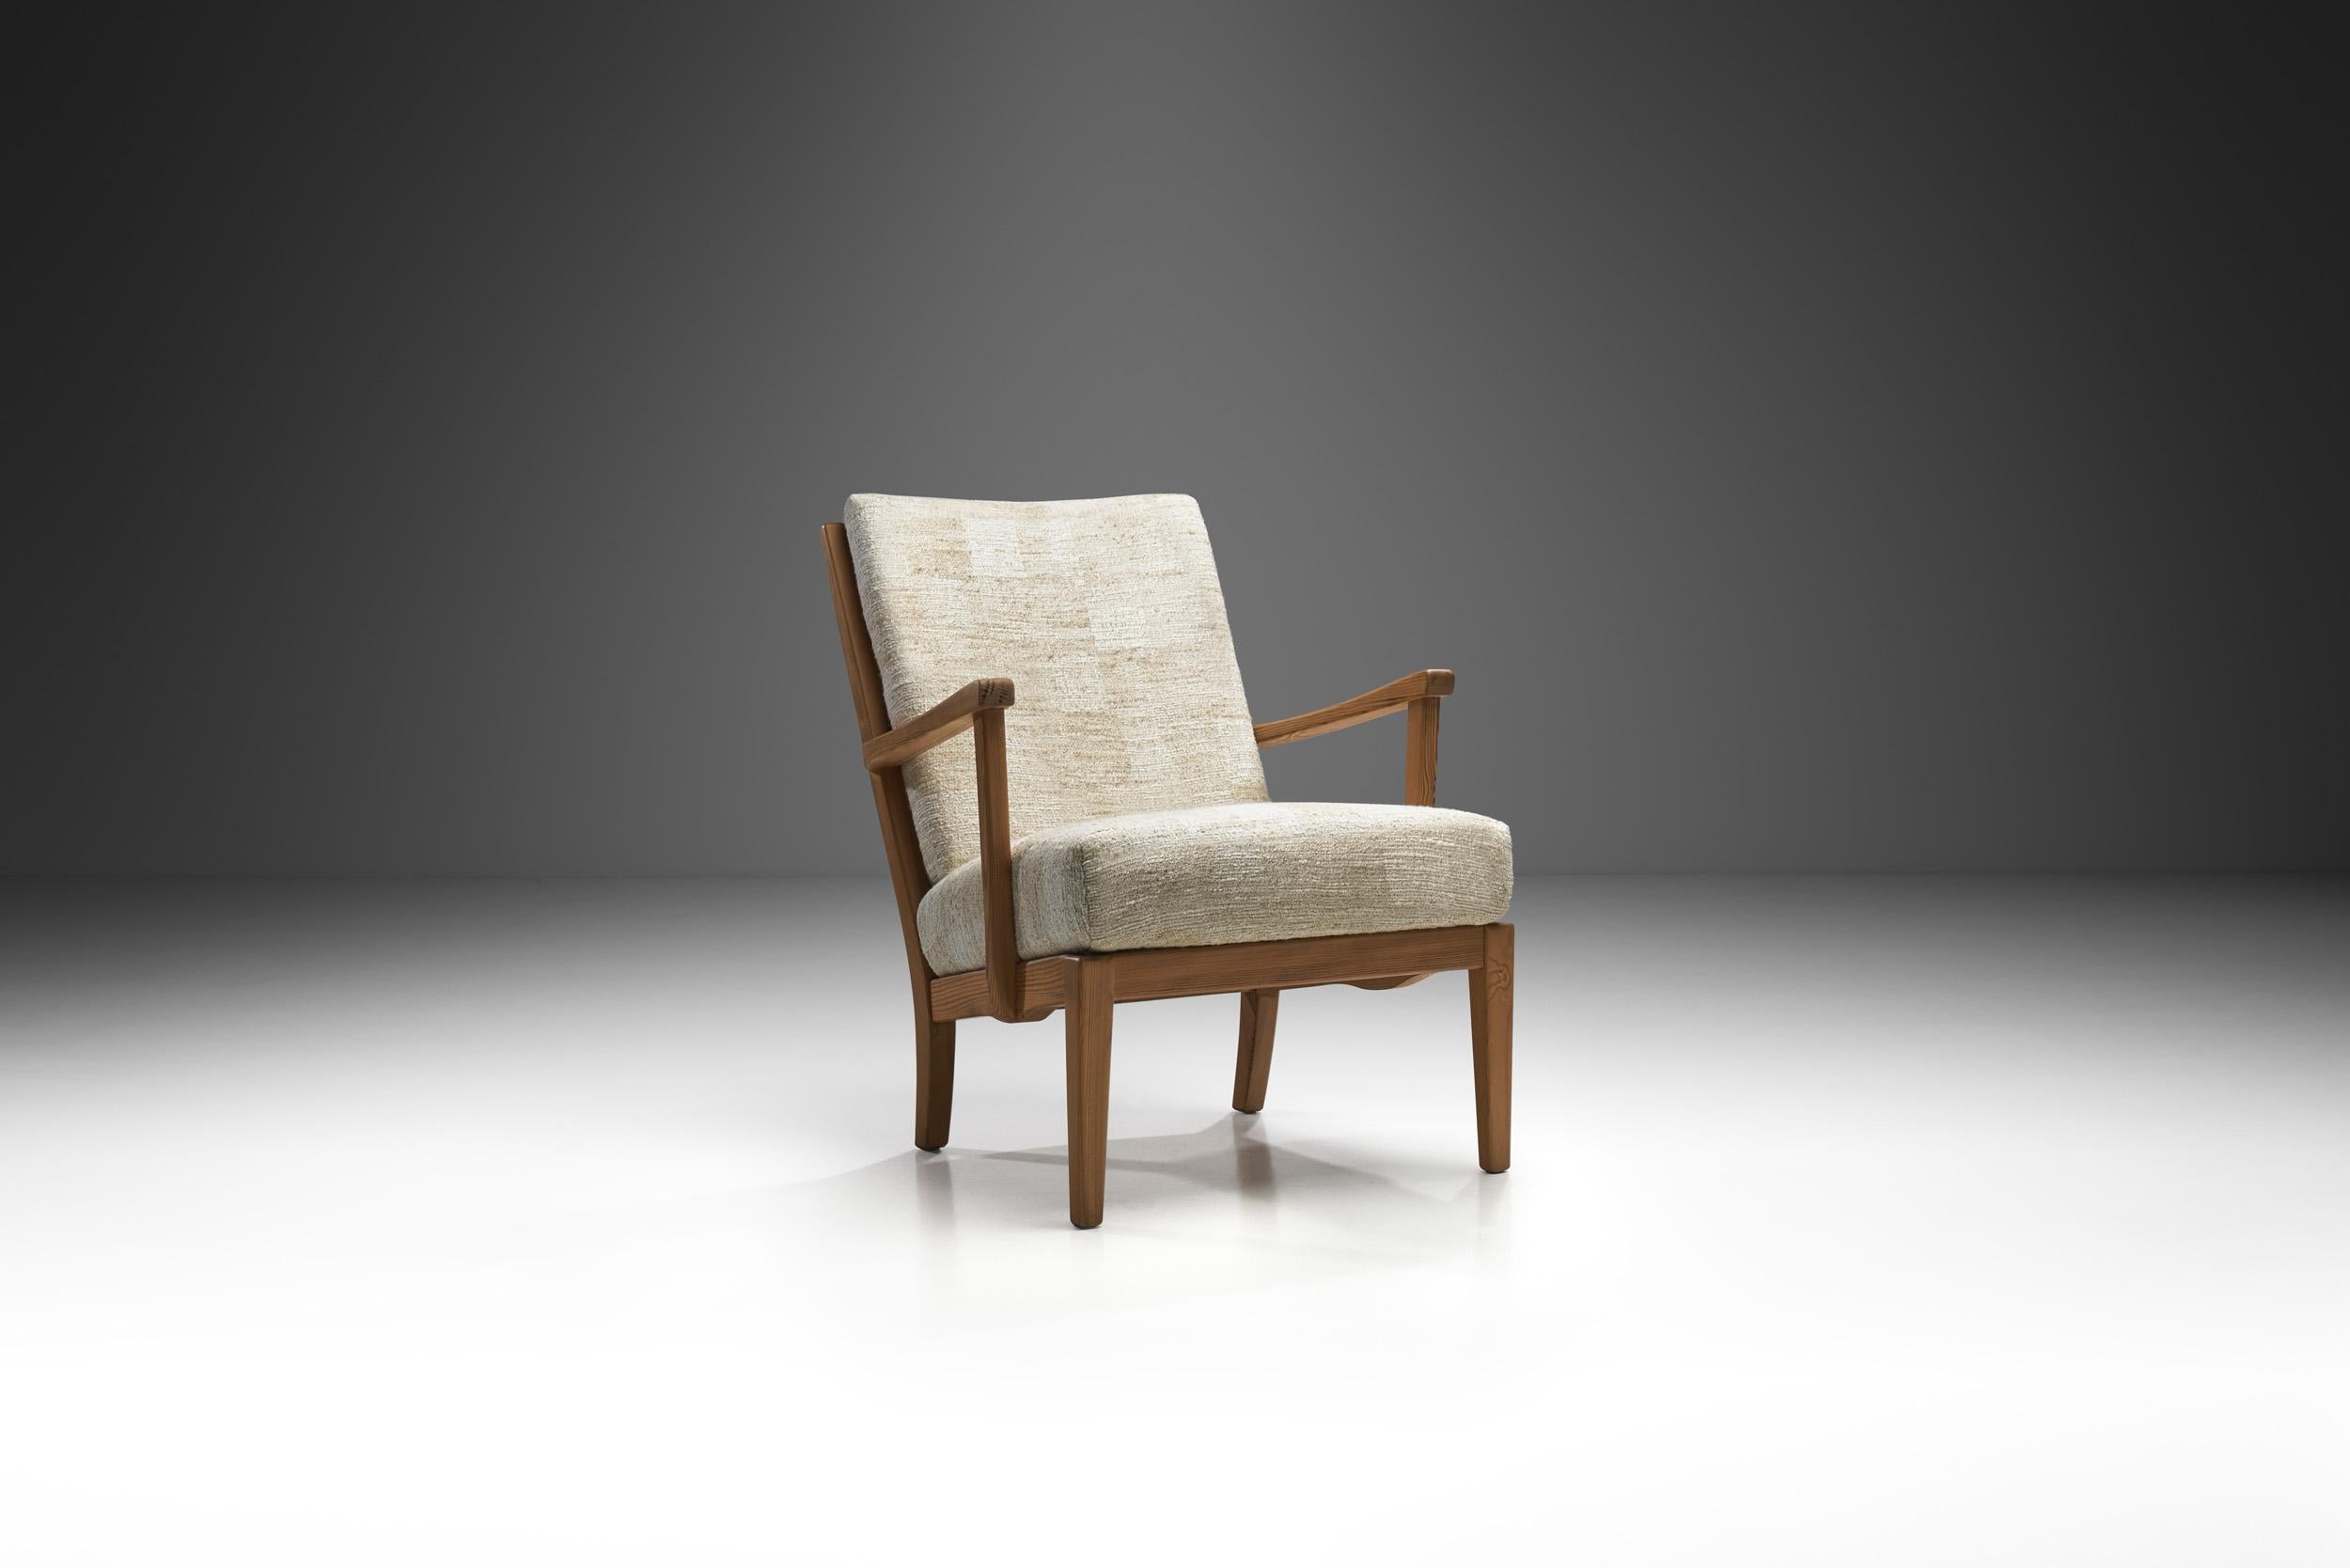 Carl Malmsten est l'un des plus célèbres designers de meubles suédois. Nombre de ses meubles sont considérés comme des classiques du design moderne. Le fauteuil Stugan (Cottage ou Cabin en suédois) a été conçu par Malmsten pour OH Sjögrens